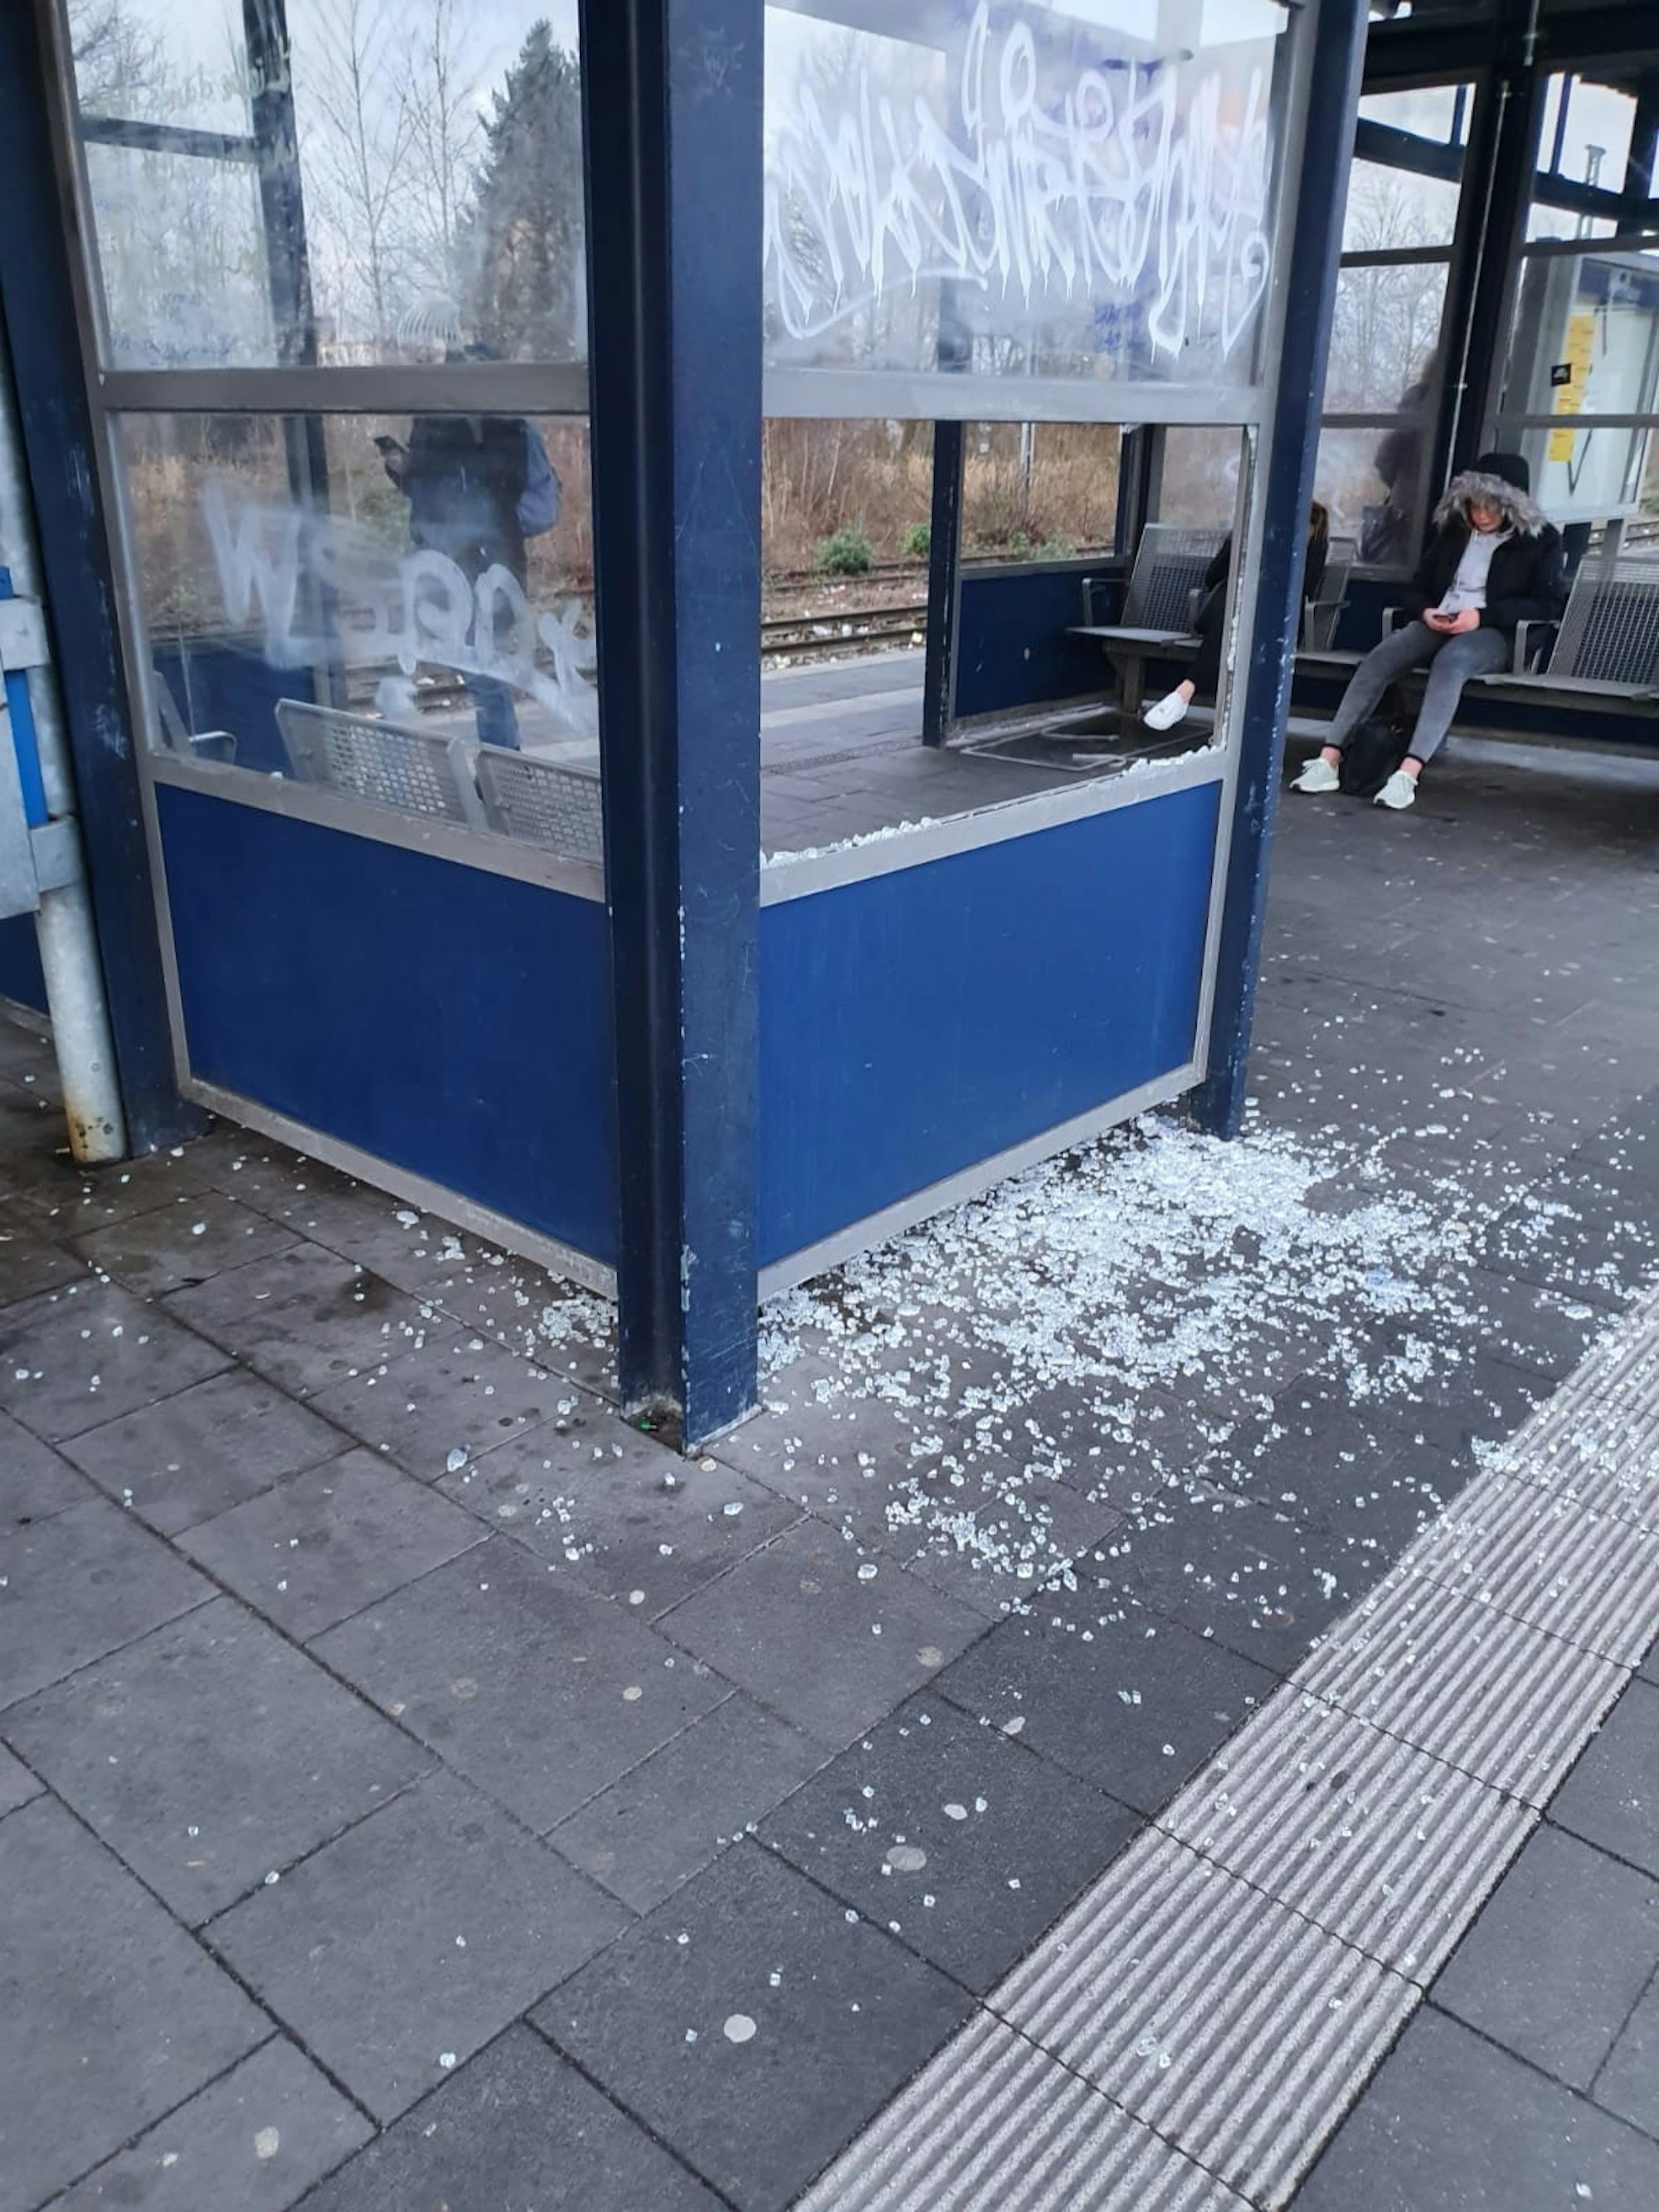 Bergheim_Bahnhof_Quadrath-Ichendorf_Vandalismus